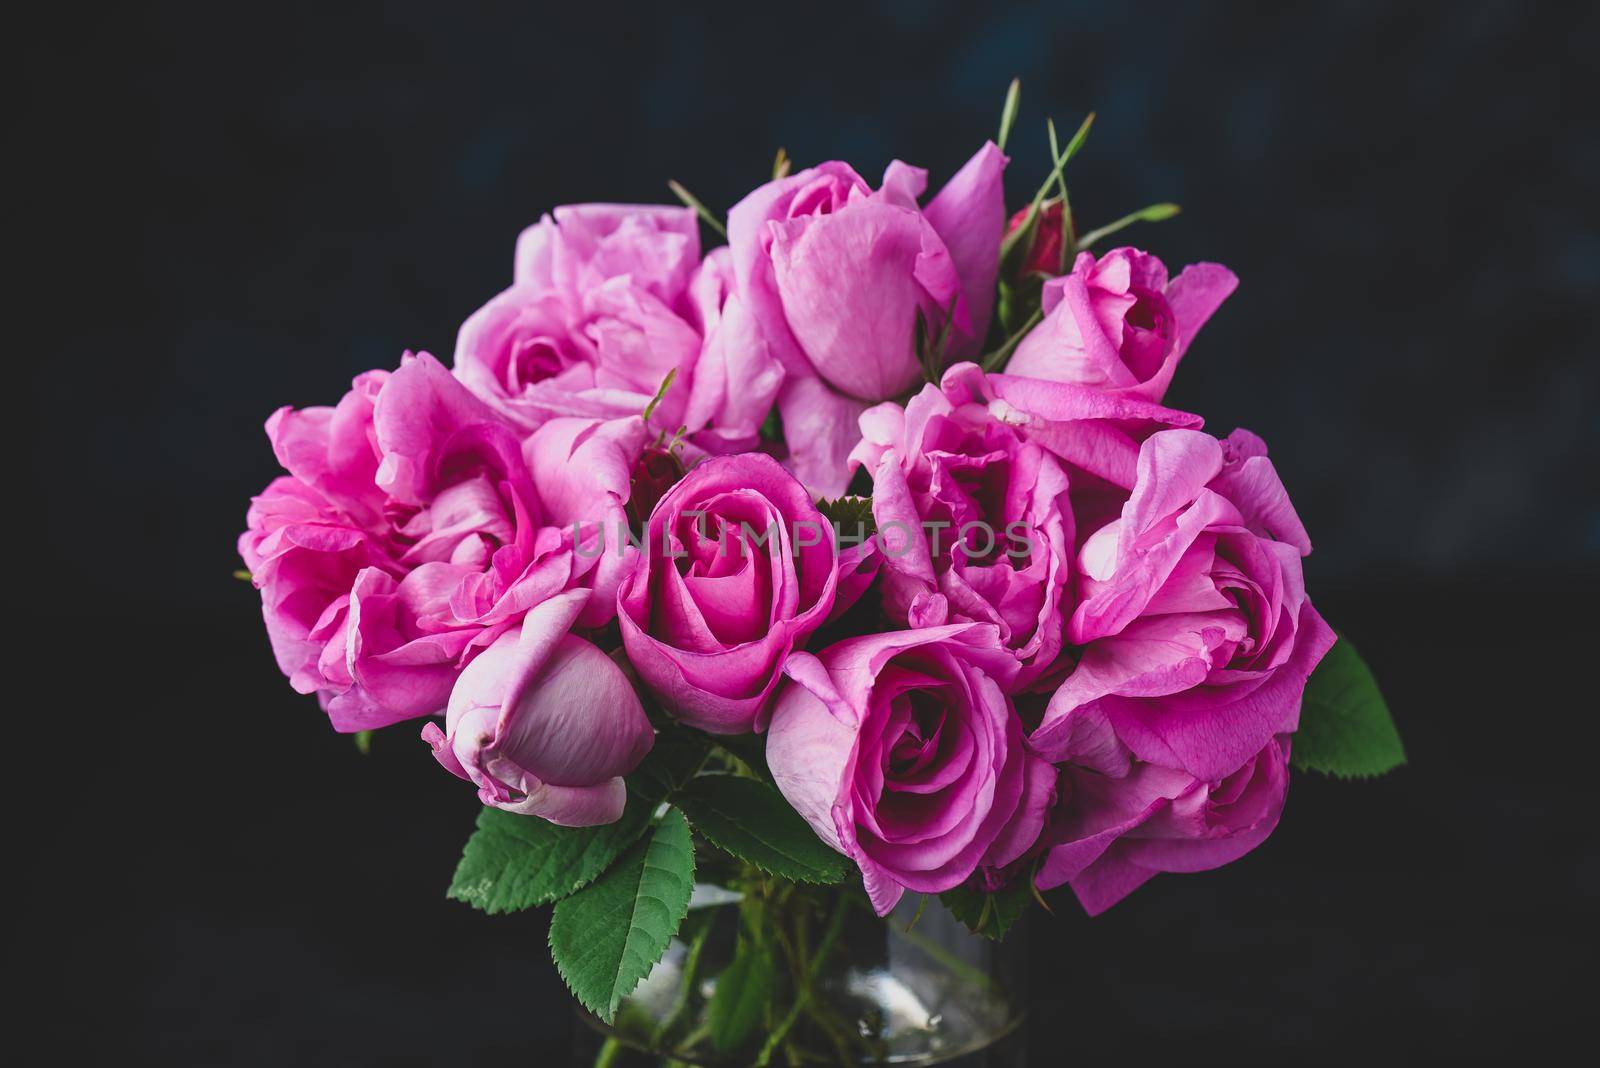 Bouquet of pink garden roses by Seva_blsv